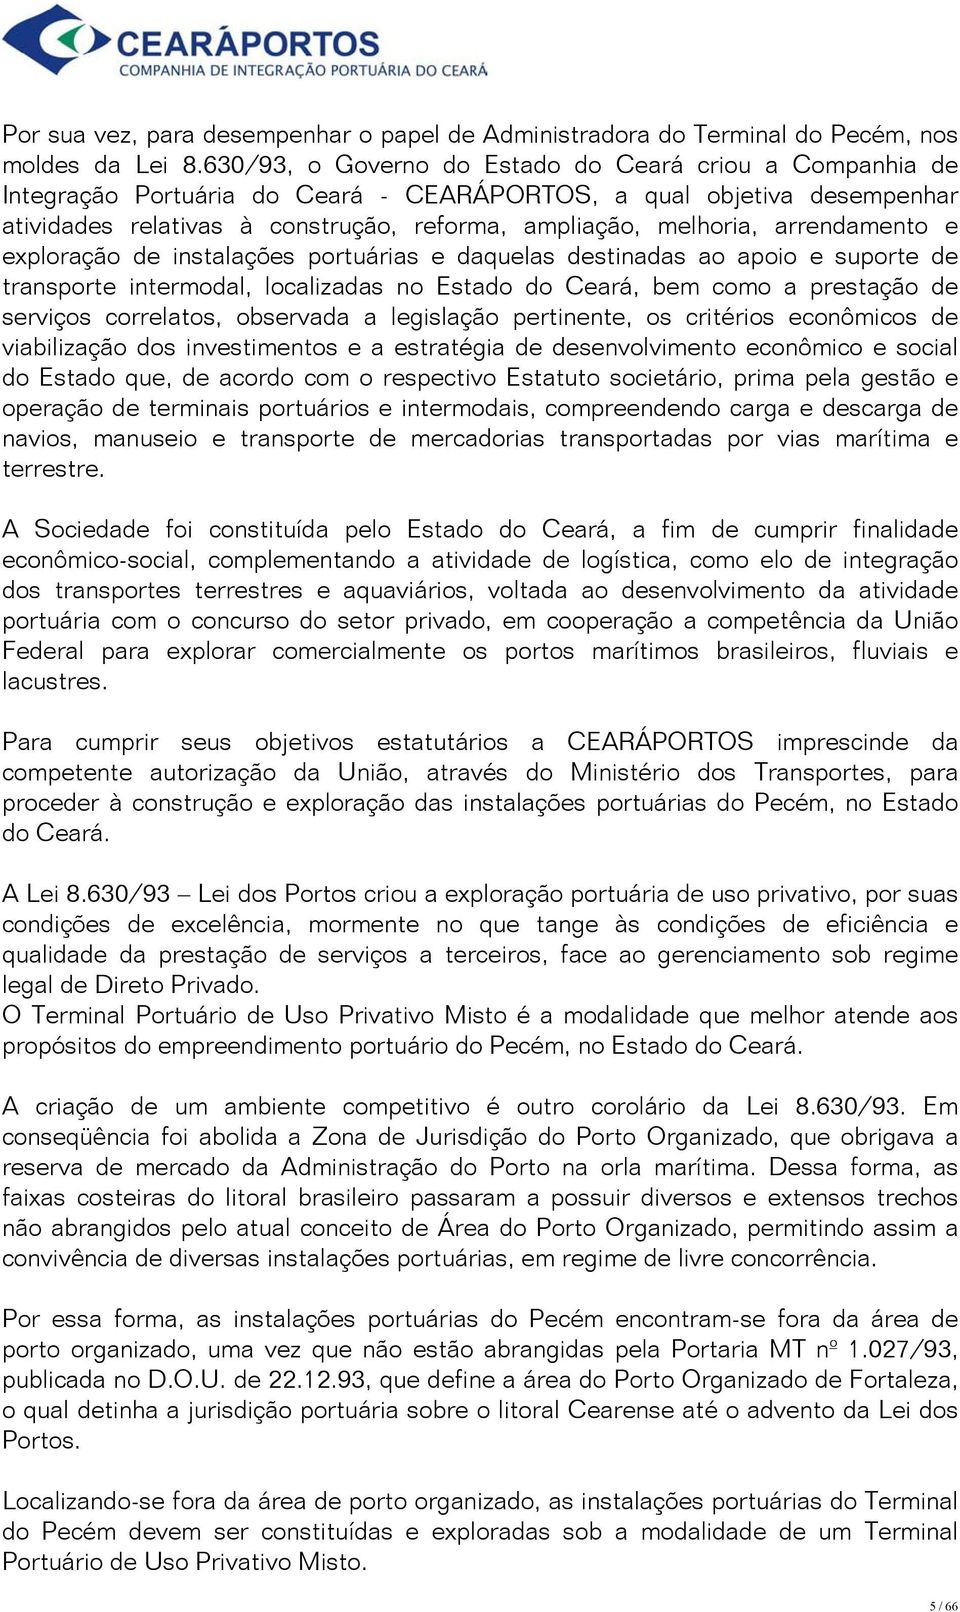 arrendamento e exploração de instalações portuárias e daquelas destinadas ao apoio e suporte de transporte intermodal, localizadas no Estado do Ceará, bem como a prestação de serviços correlatos,